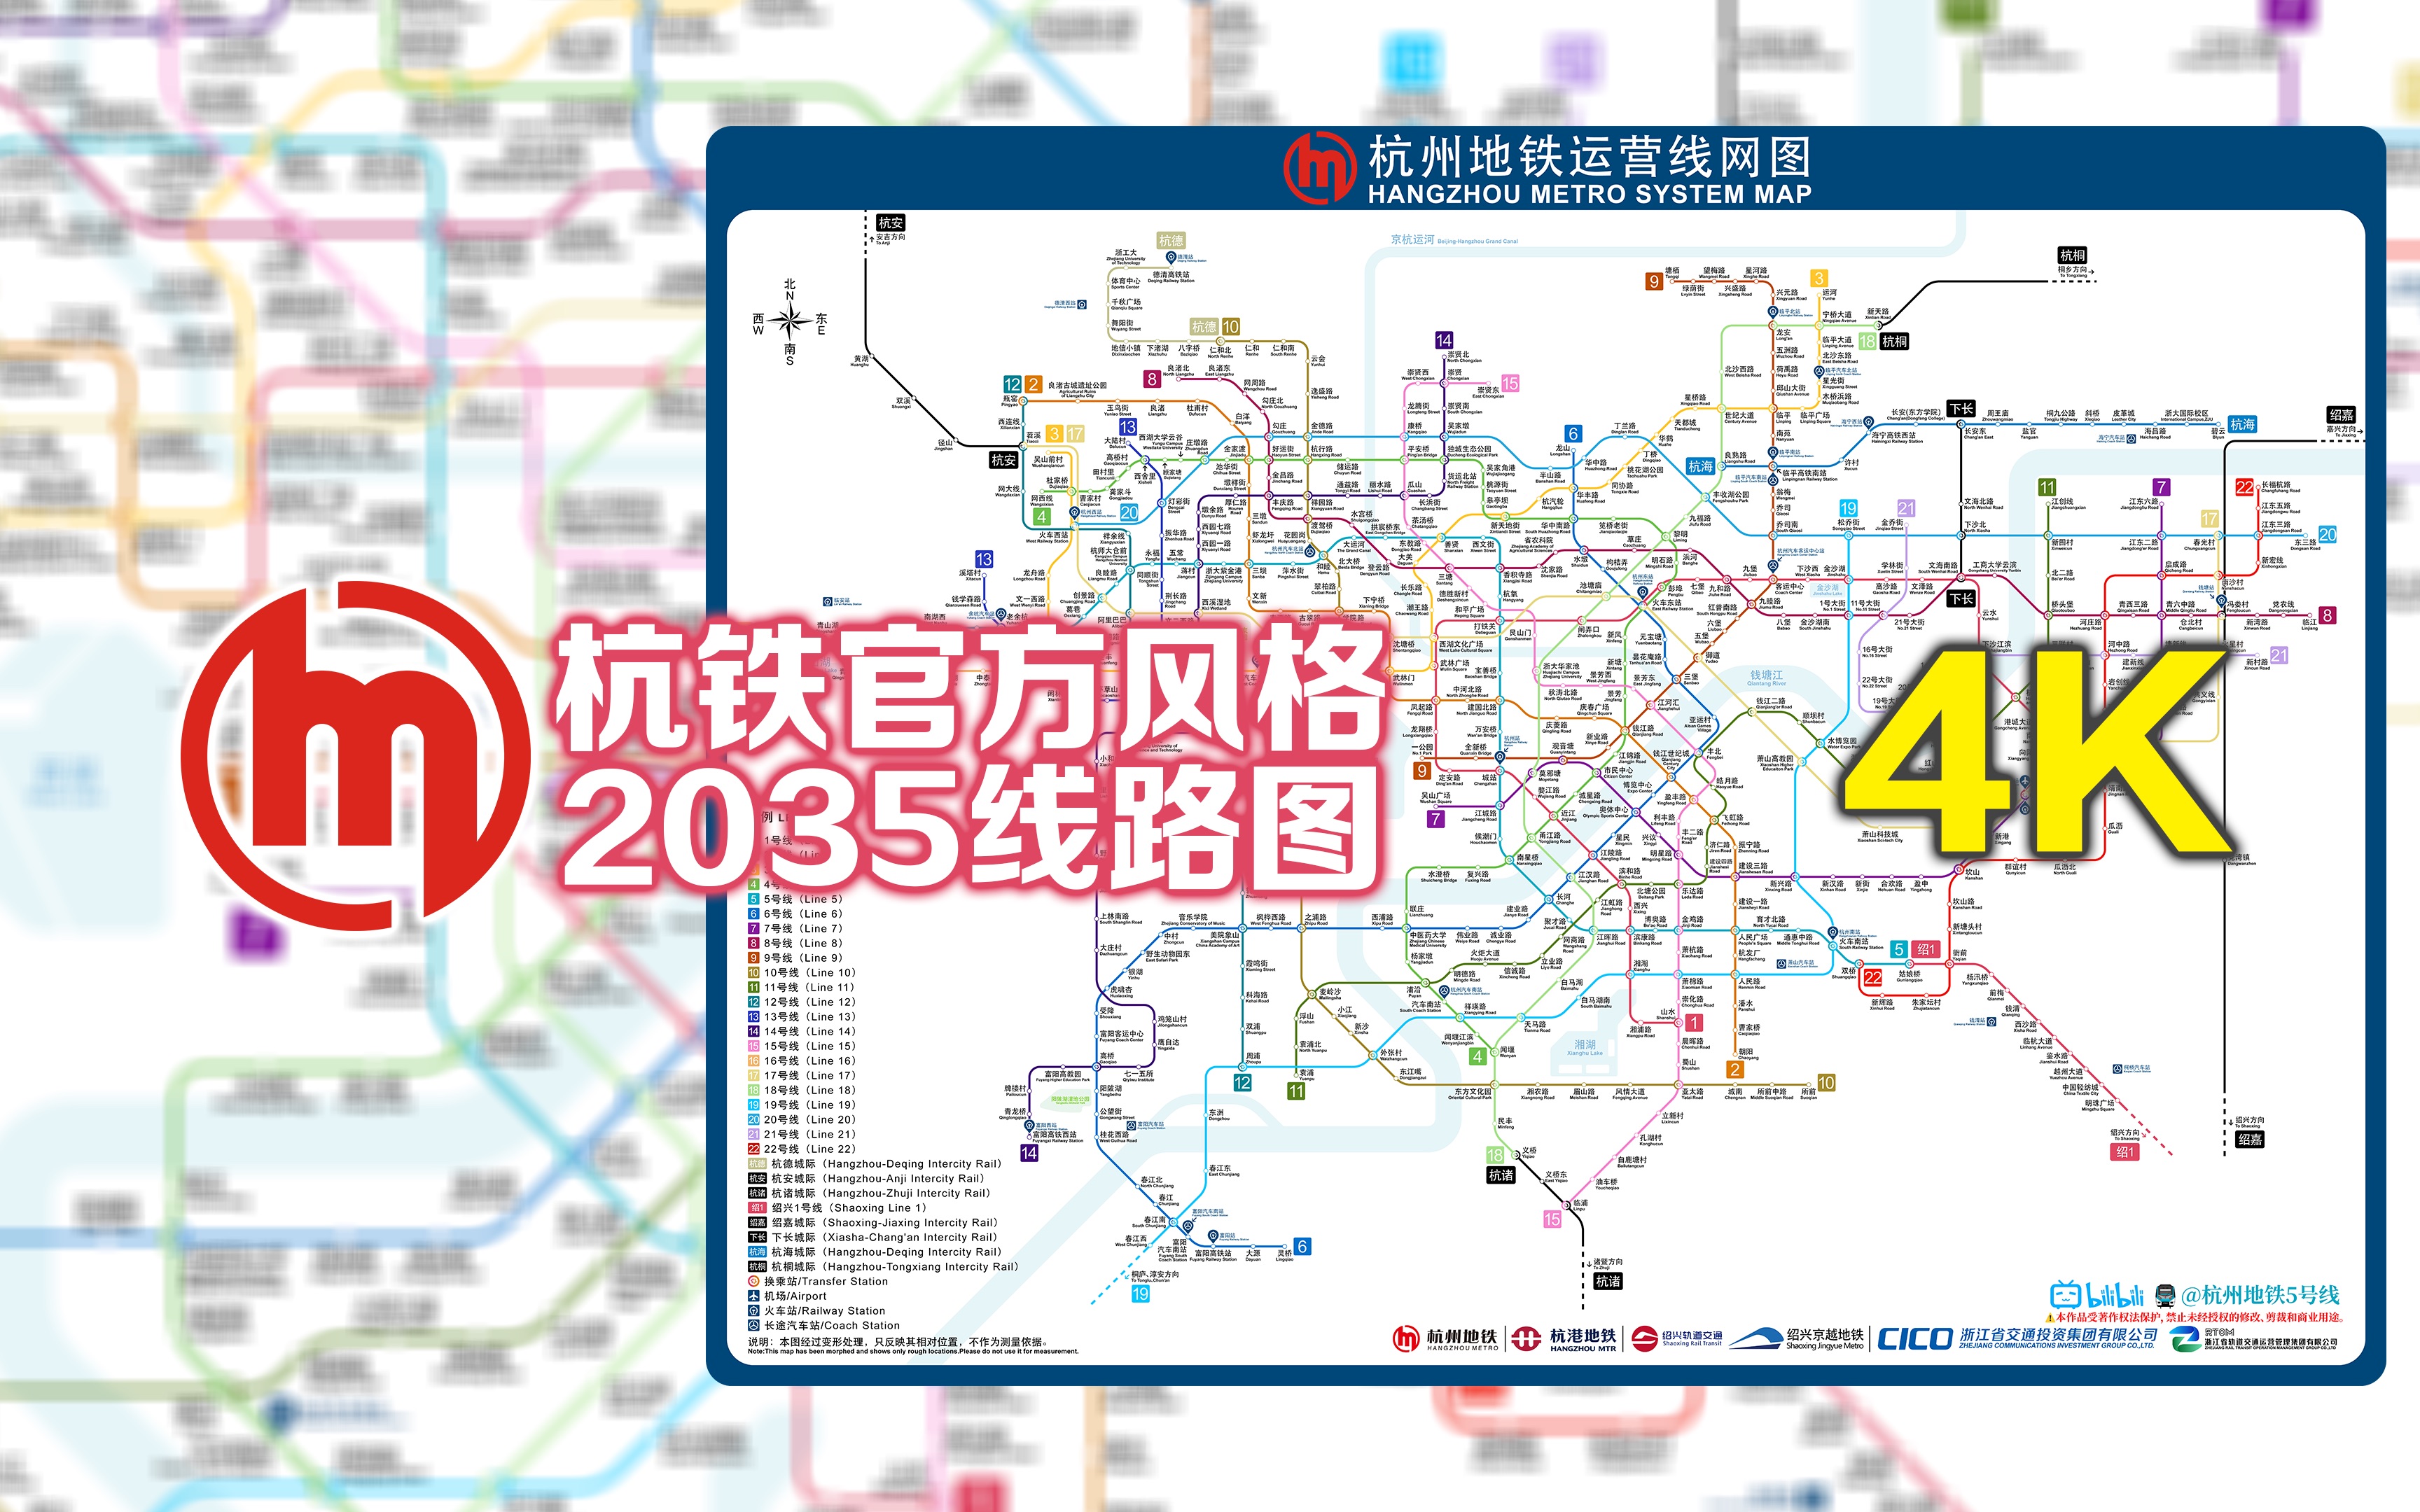 【杭州地铁】官方风格!规划和自然资源局版2035线路图